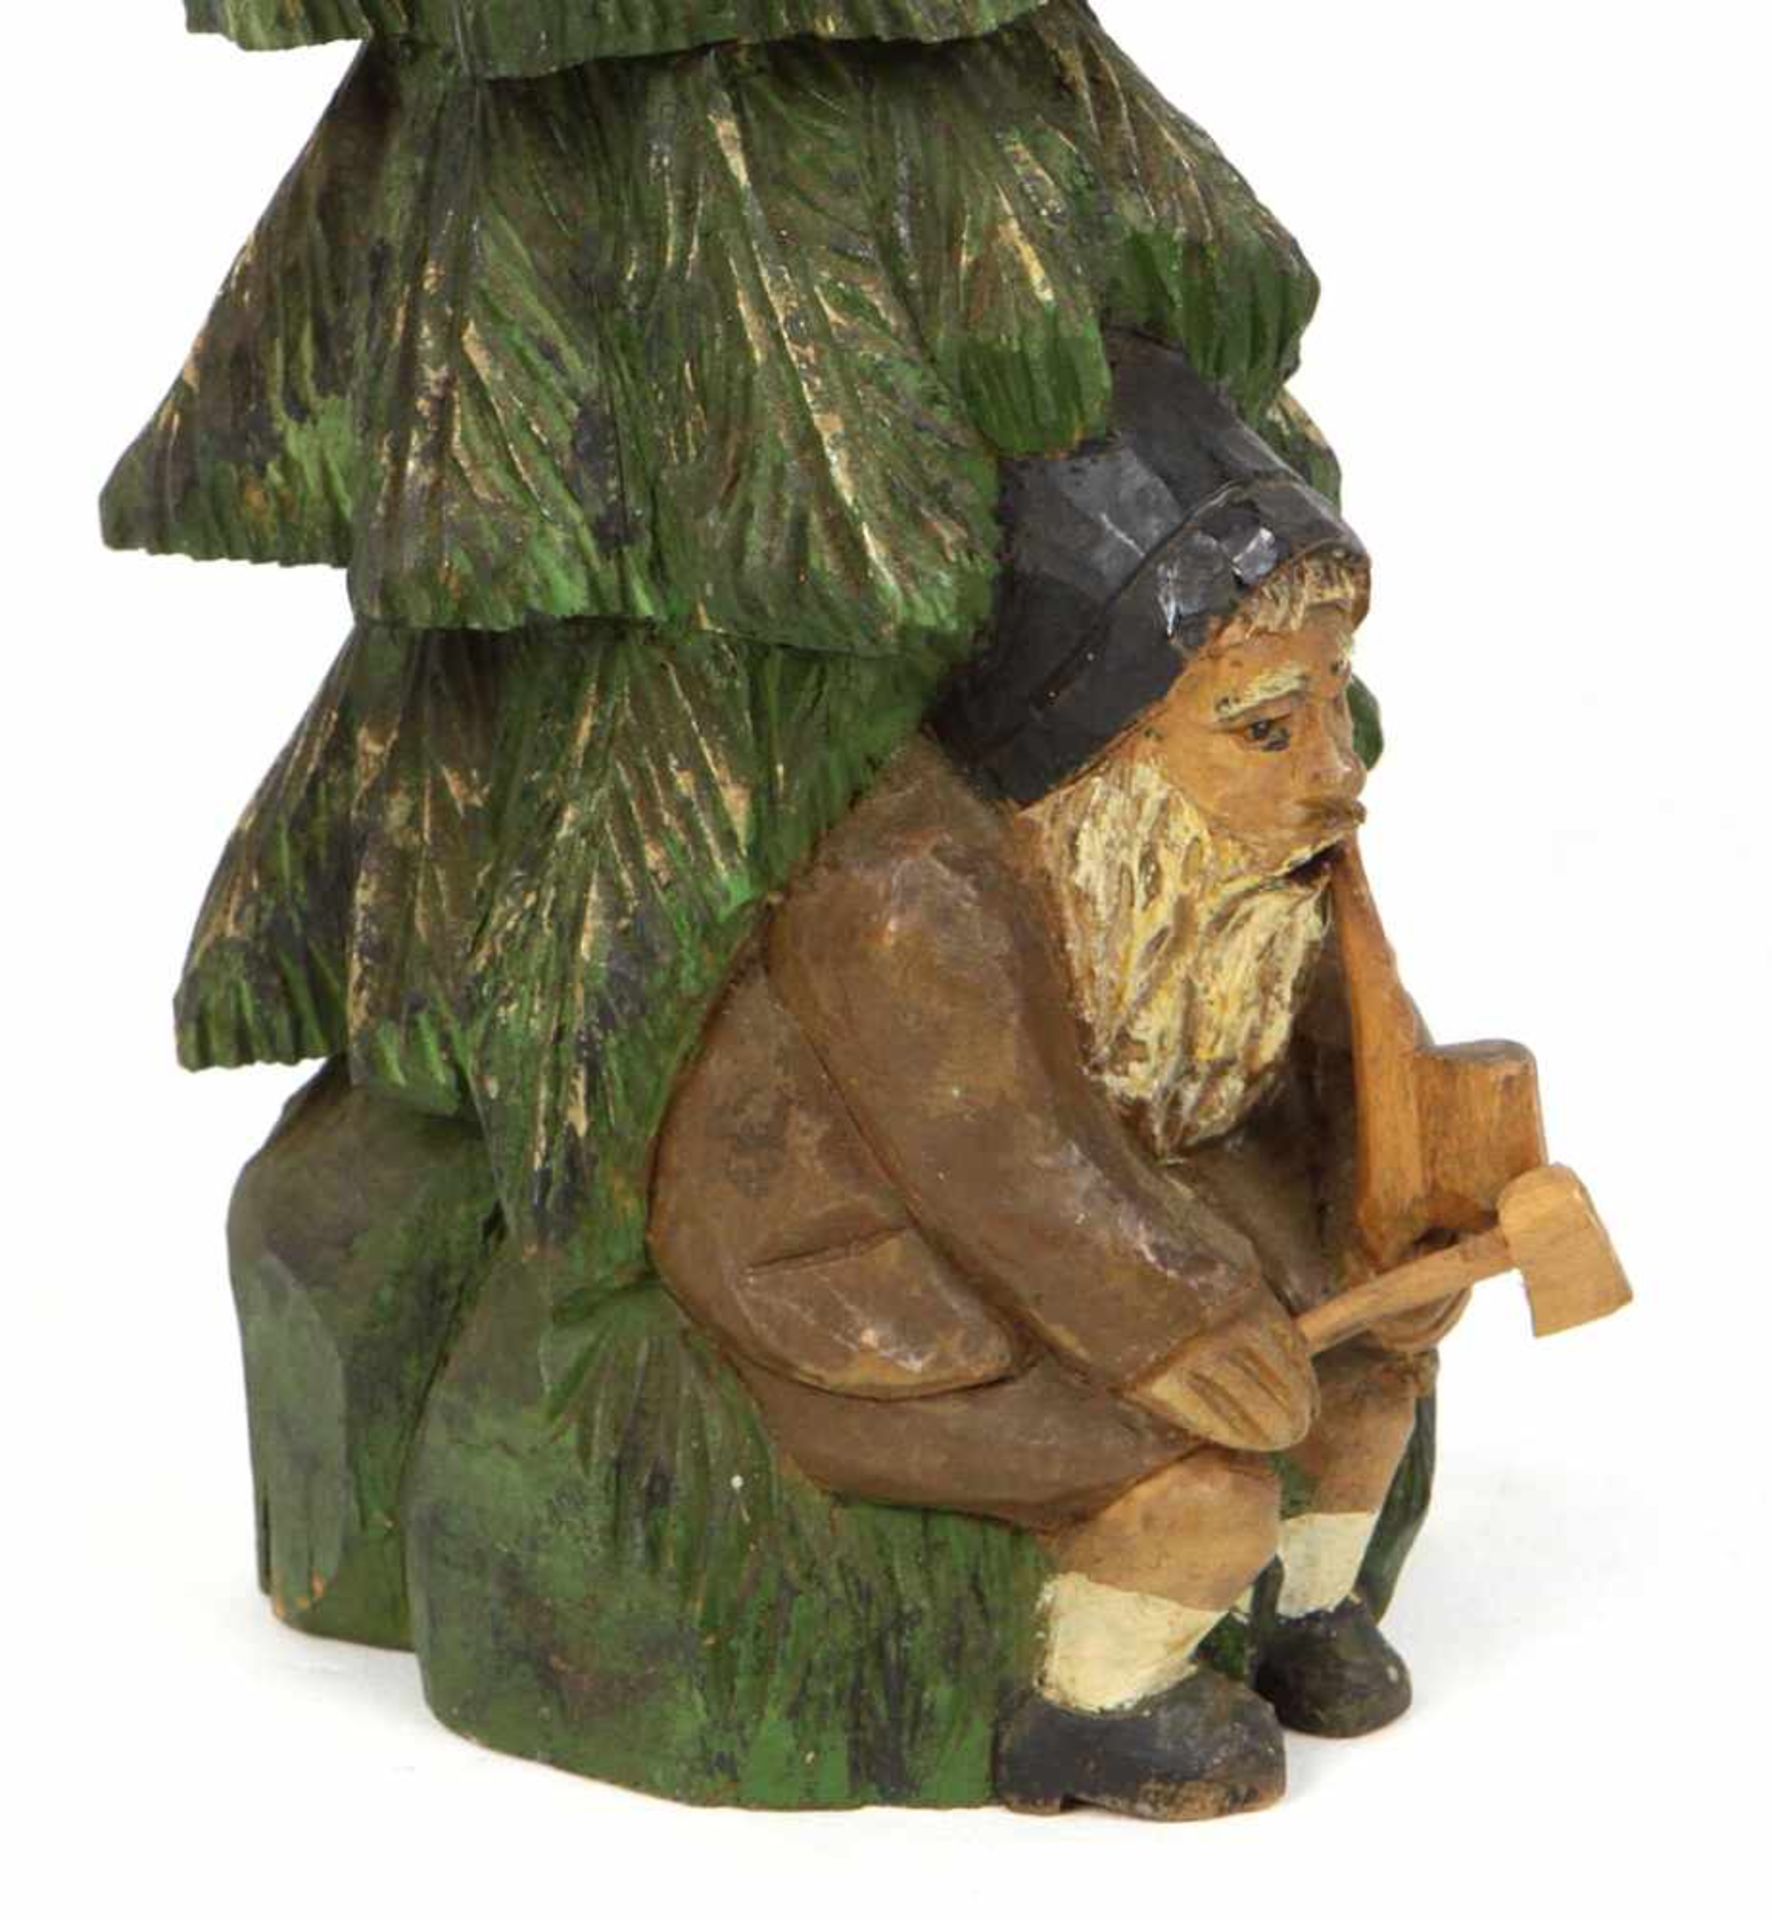 geschnitzter RäucherbaumHolz von Hand beschnitzt u. farbig gefasst, Pfeife rauchender Waldarbeiter - Bild 2 aus 2